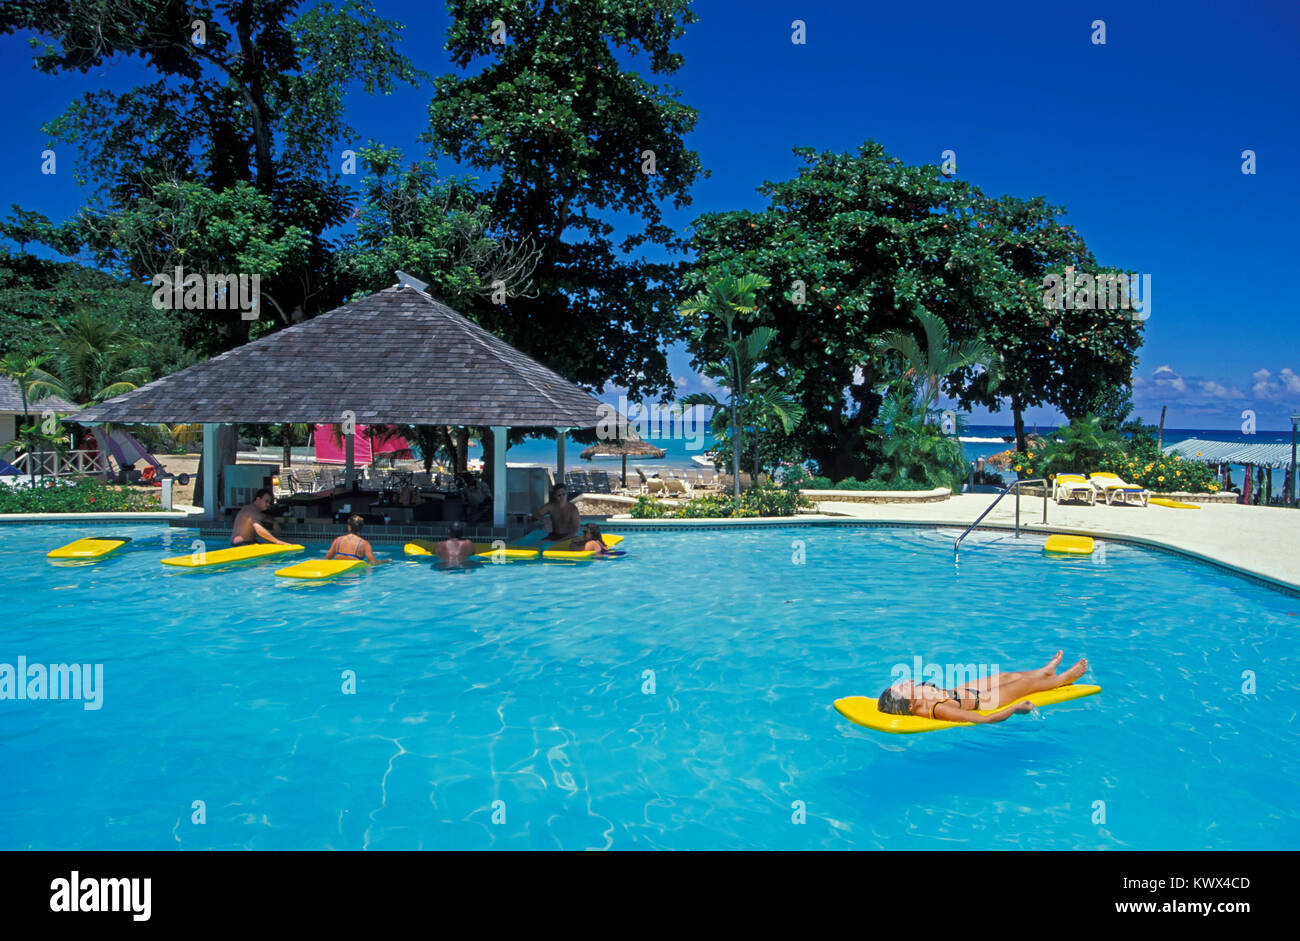 La piscina del hotel, Negril, Jamaica Foto de stock